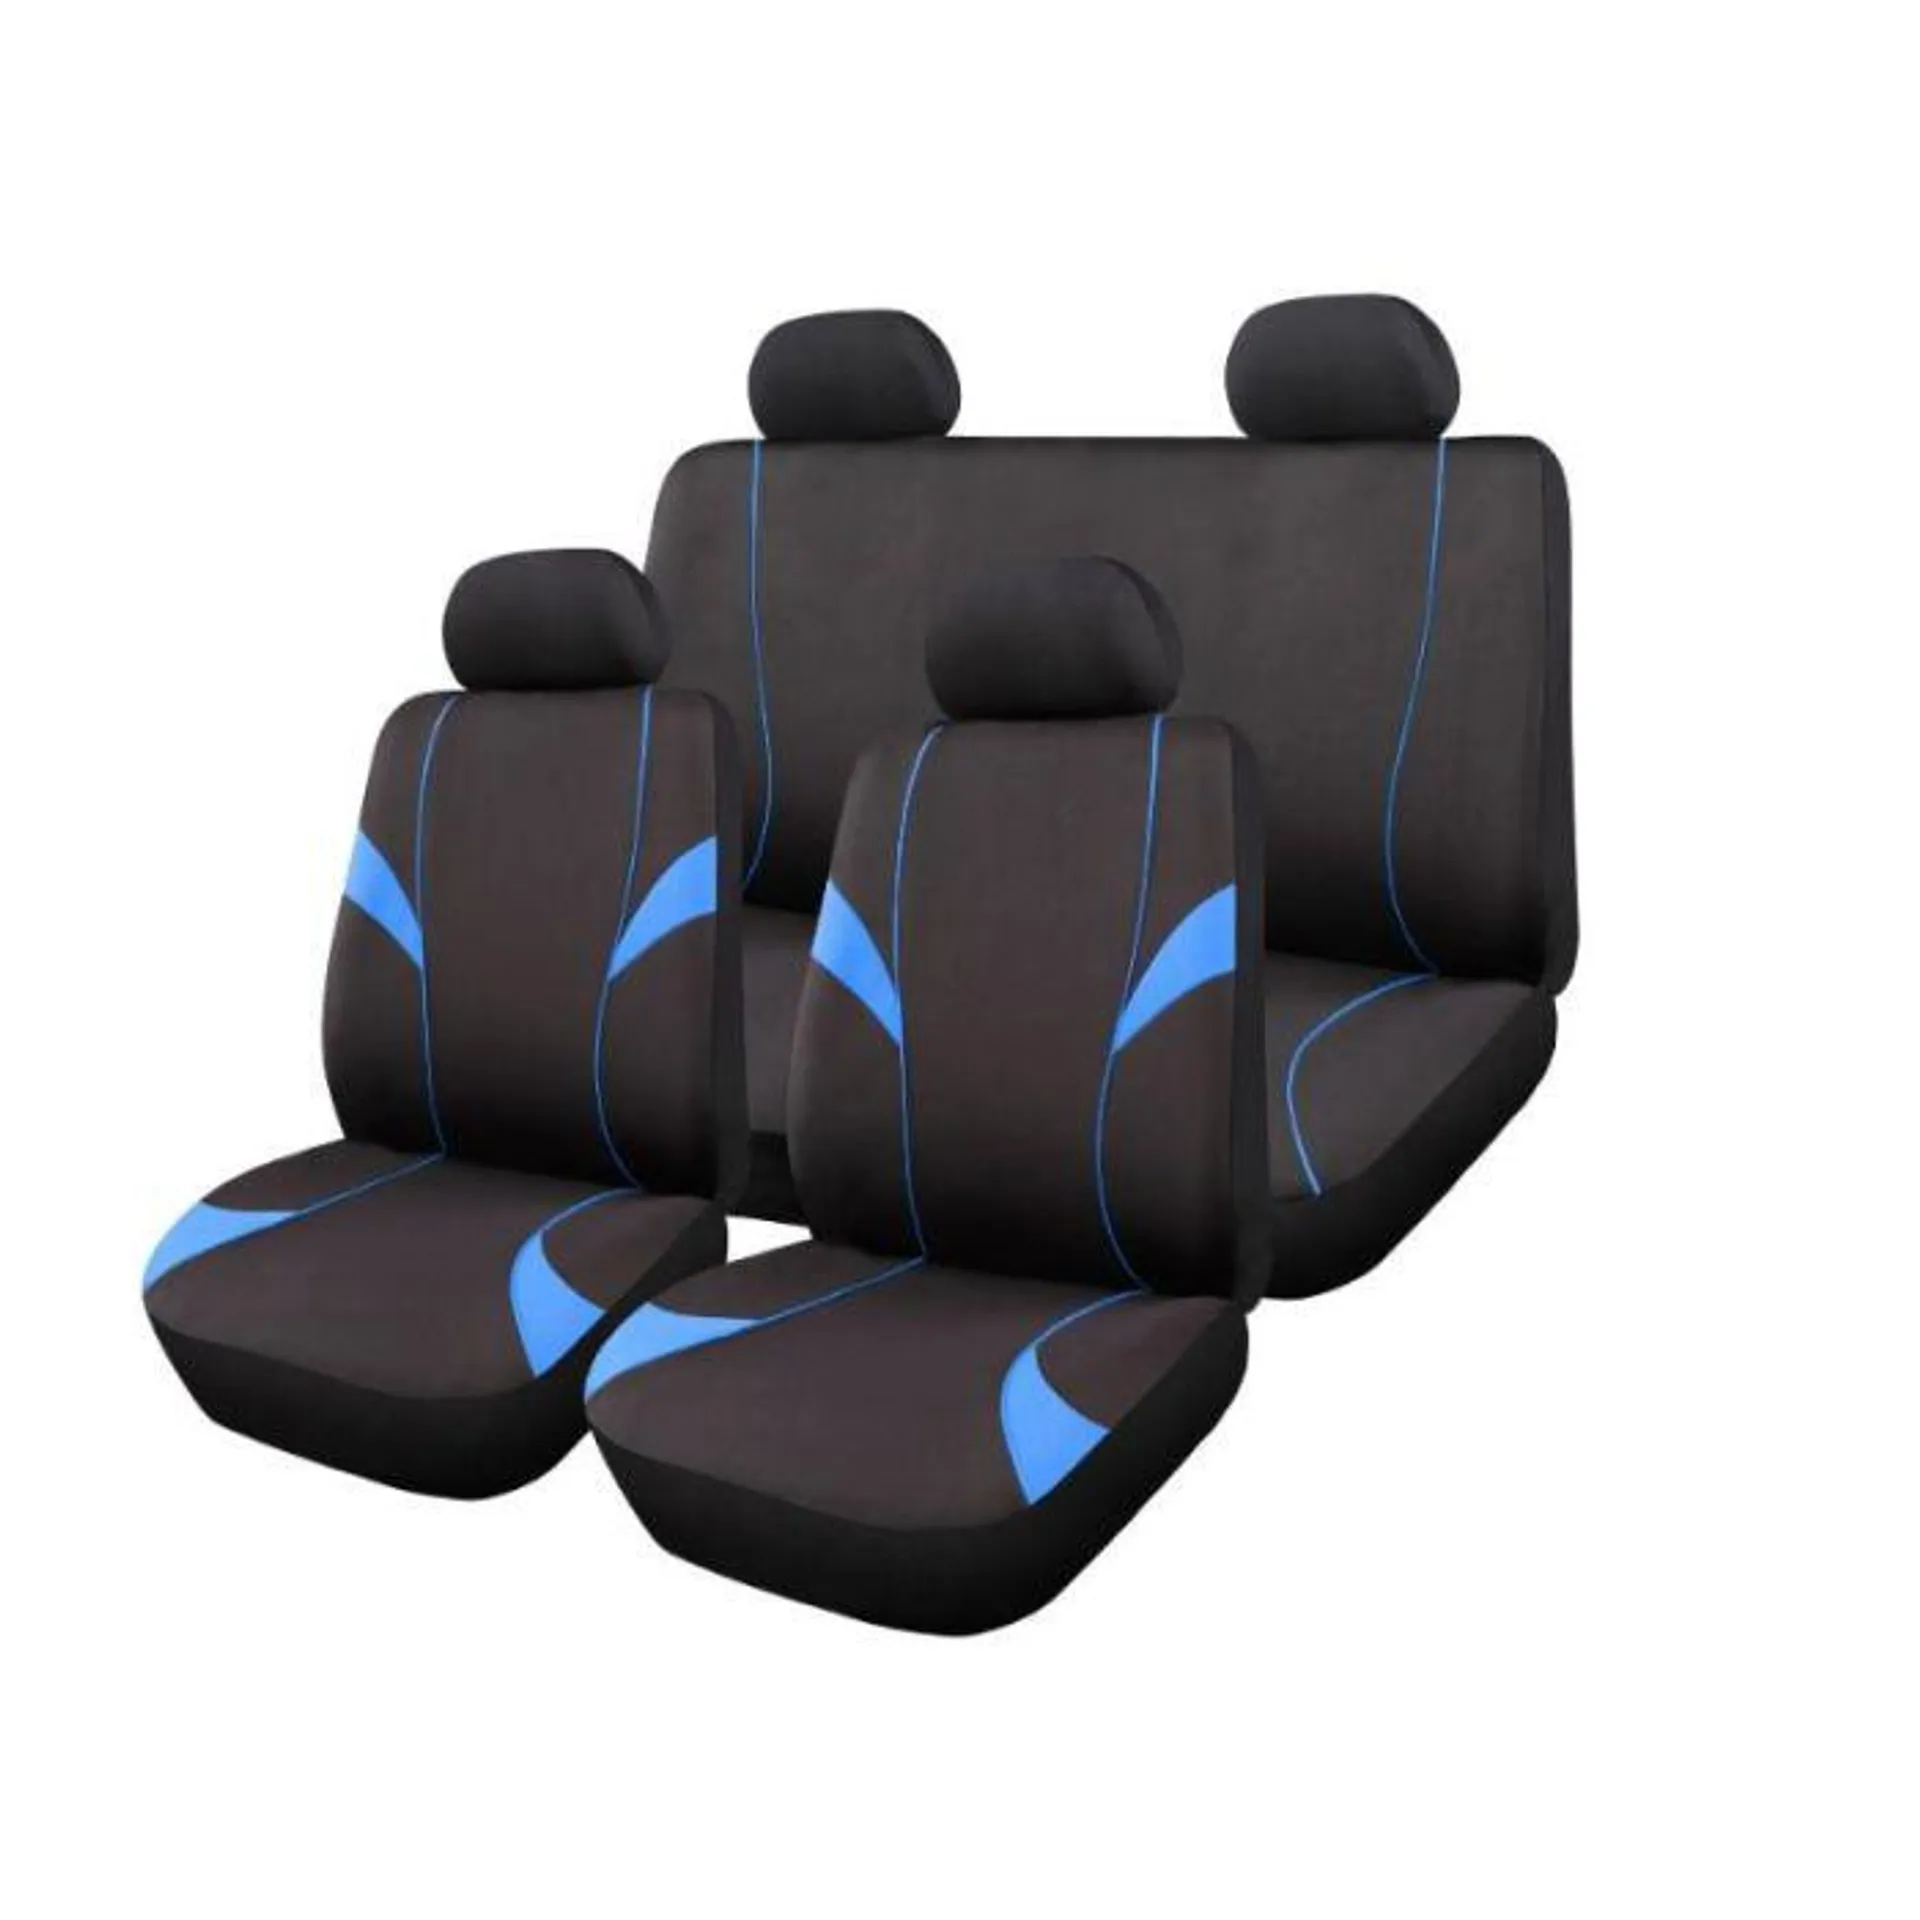 Autogear 11 Piece Monaco Seat Cover Set Black / Blue